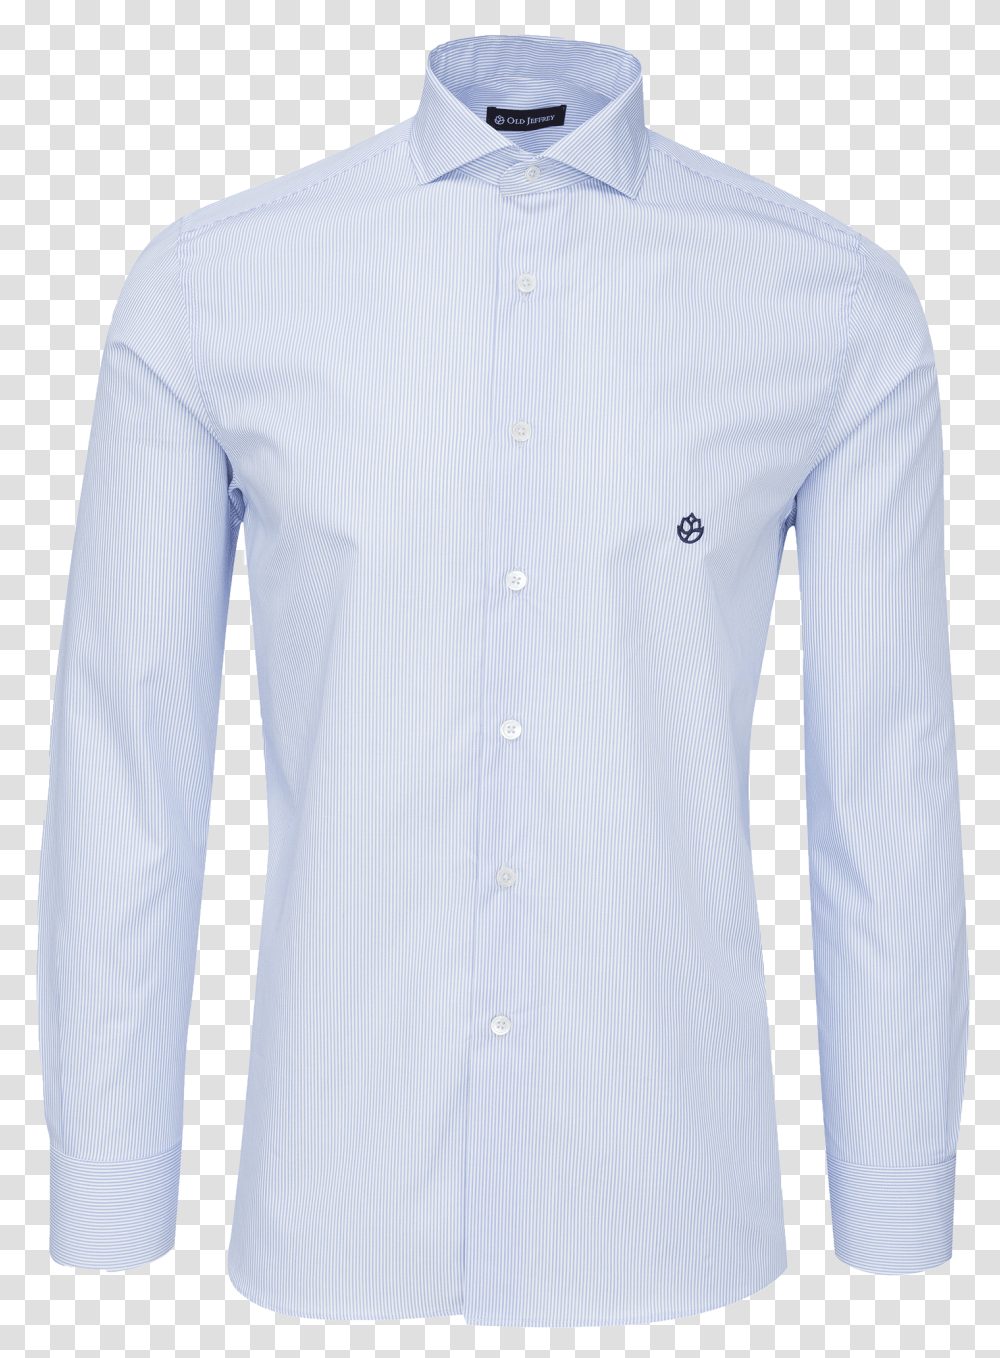 Camisa Aye Classic StripesClass Lazyload Lazyload Camisa Mil Rayas Azul, Apparel, Shirt, Dress Shirt Transparent Png